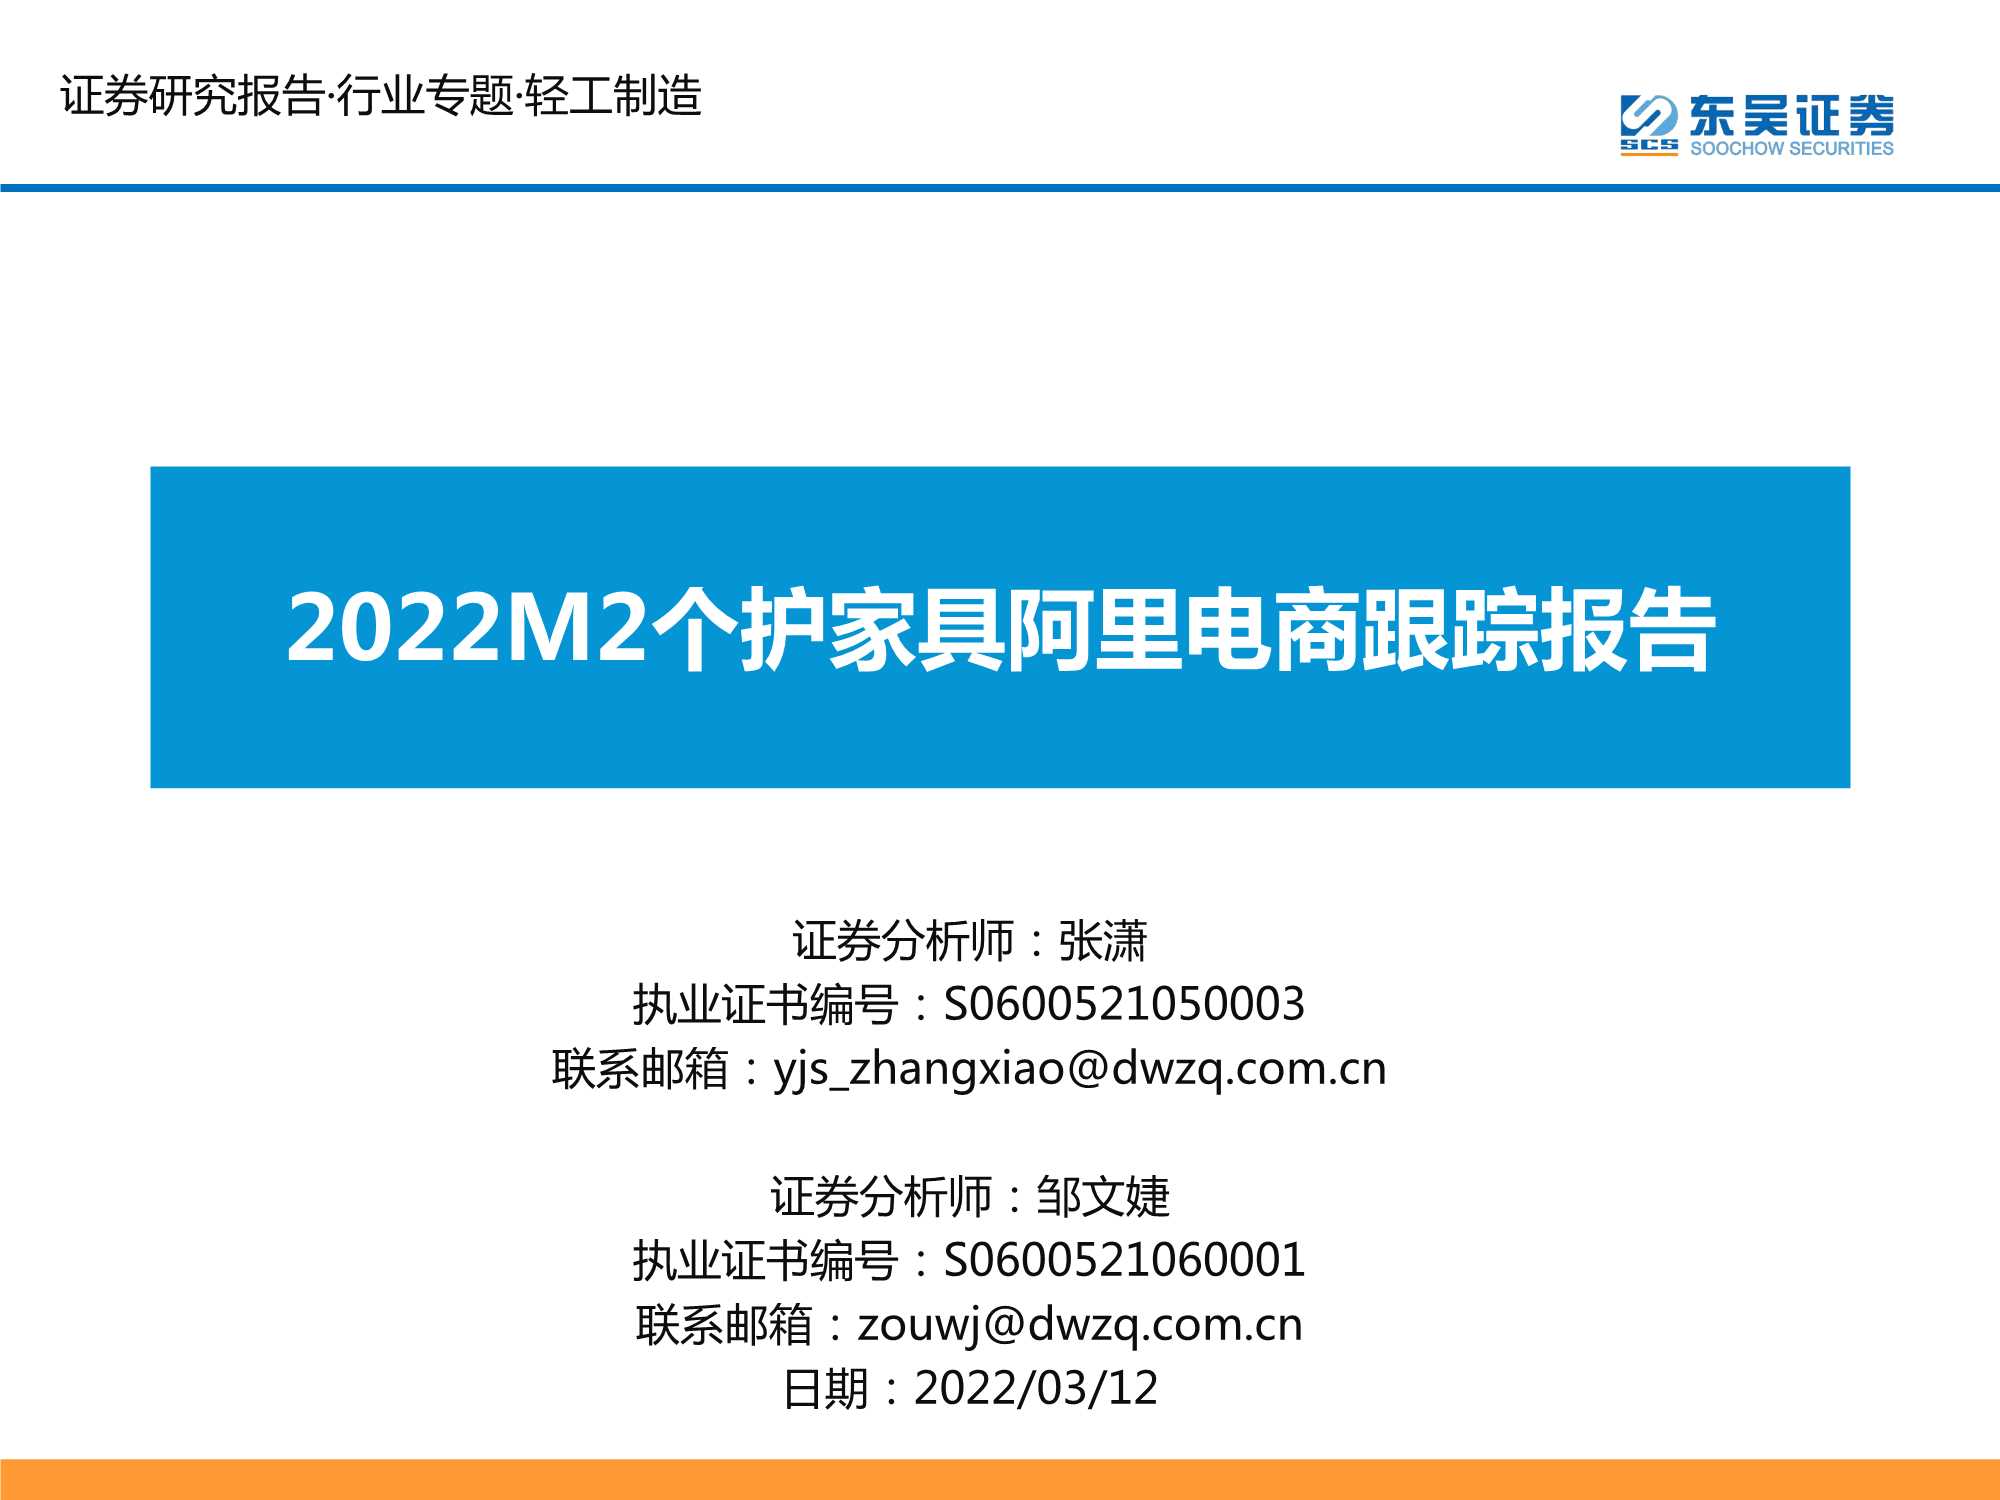 东吴证券-轻工制造行业：2022M2个护家具阿里电商跟踪报告-20220312-26页